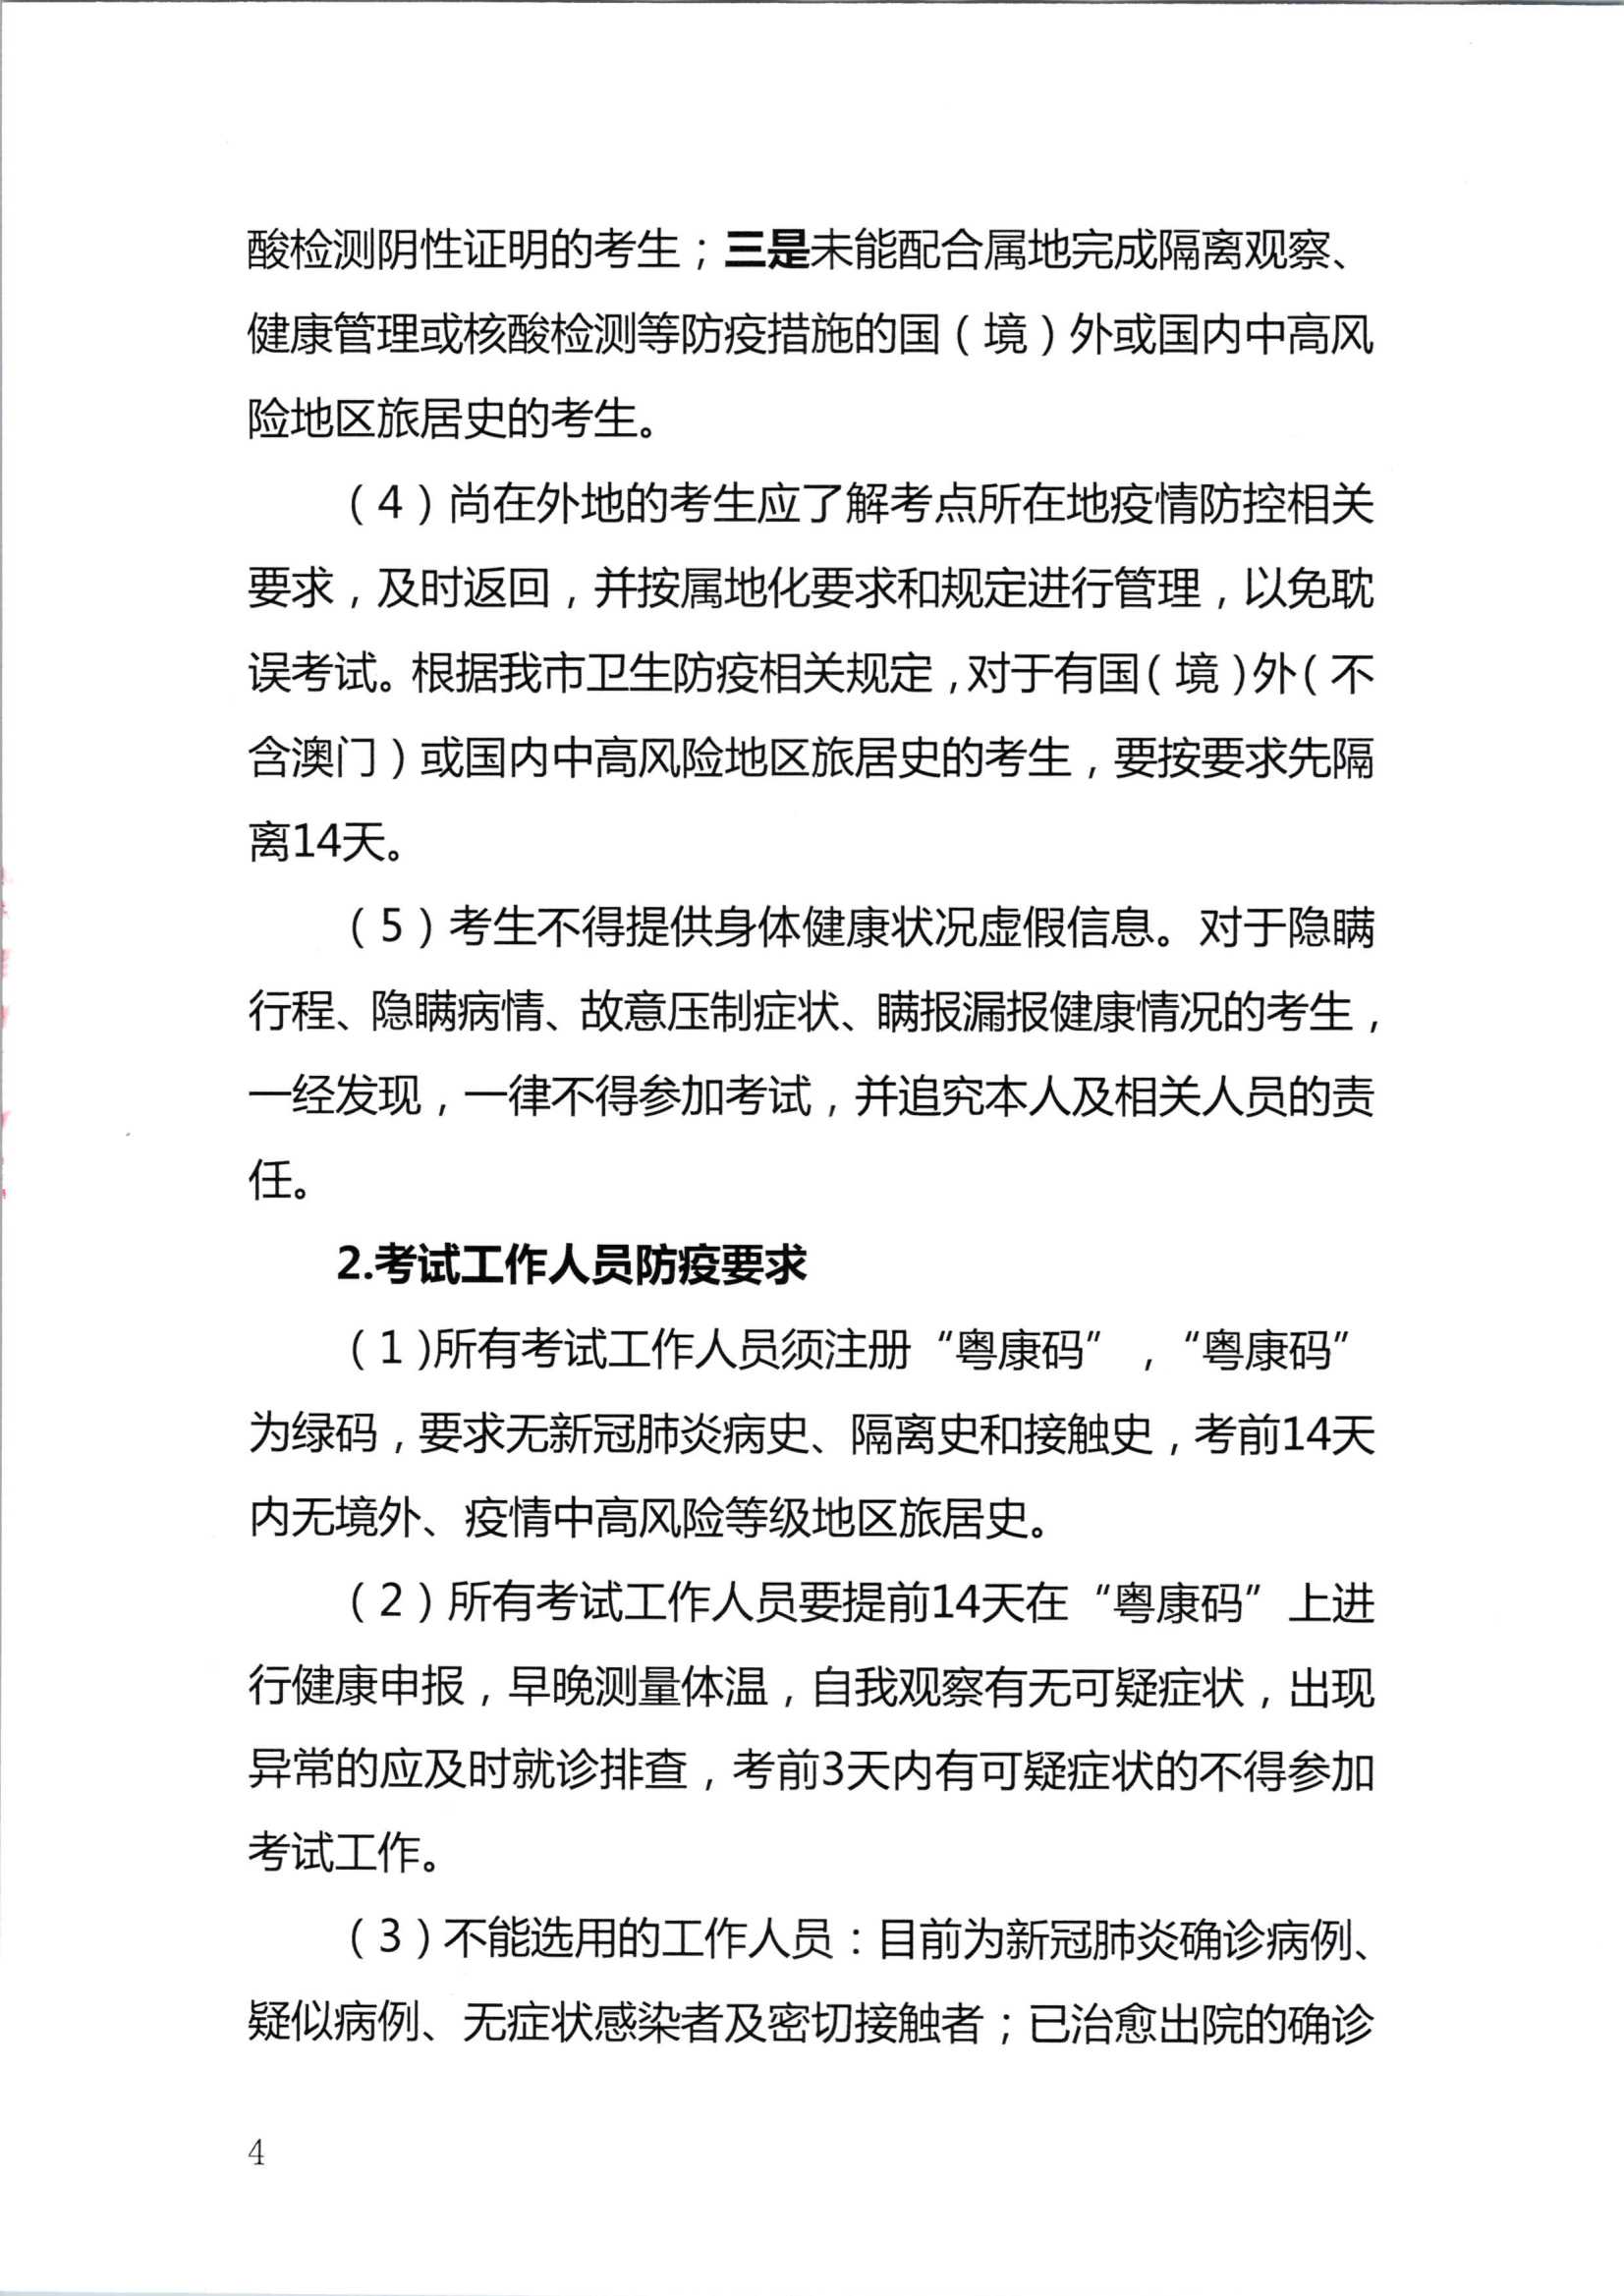 2020注册会计师全国统一考试深圳考区疫情防控工作方案_4.Png